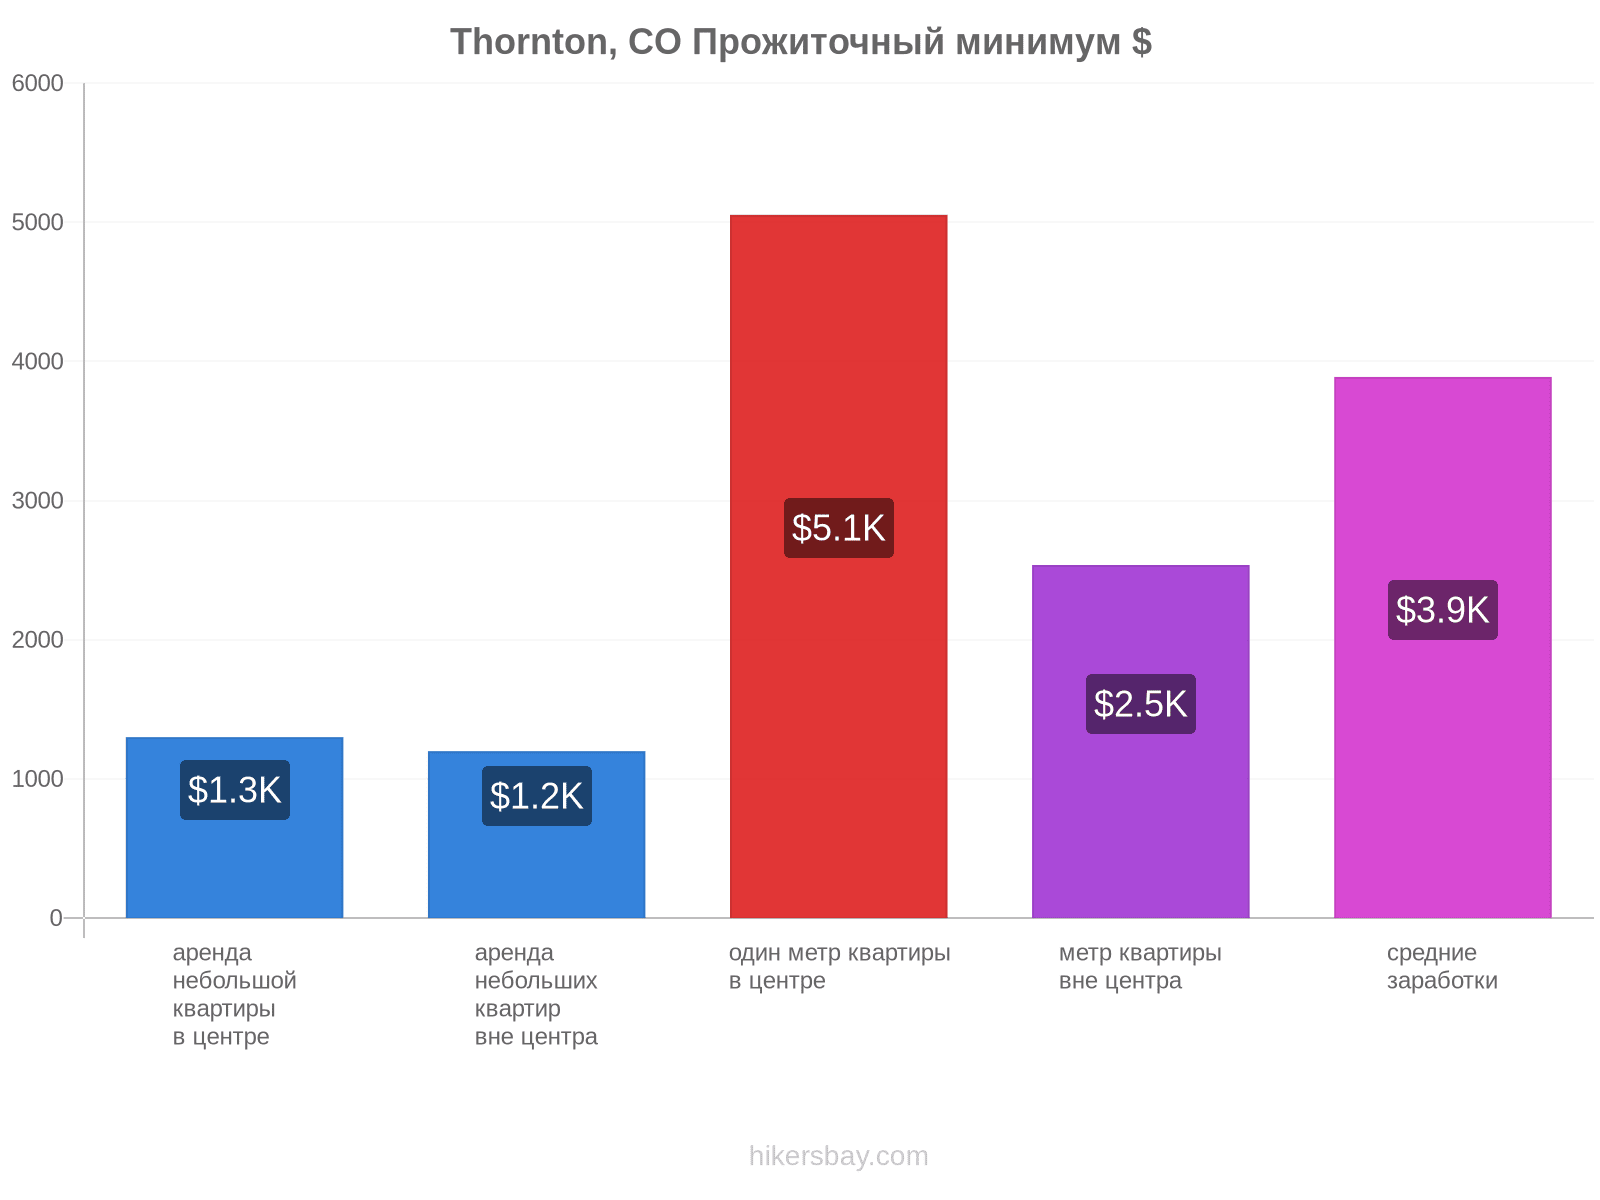 Thornton, CO стоимость жизни hikersbay.com